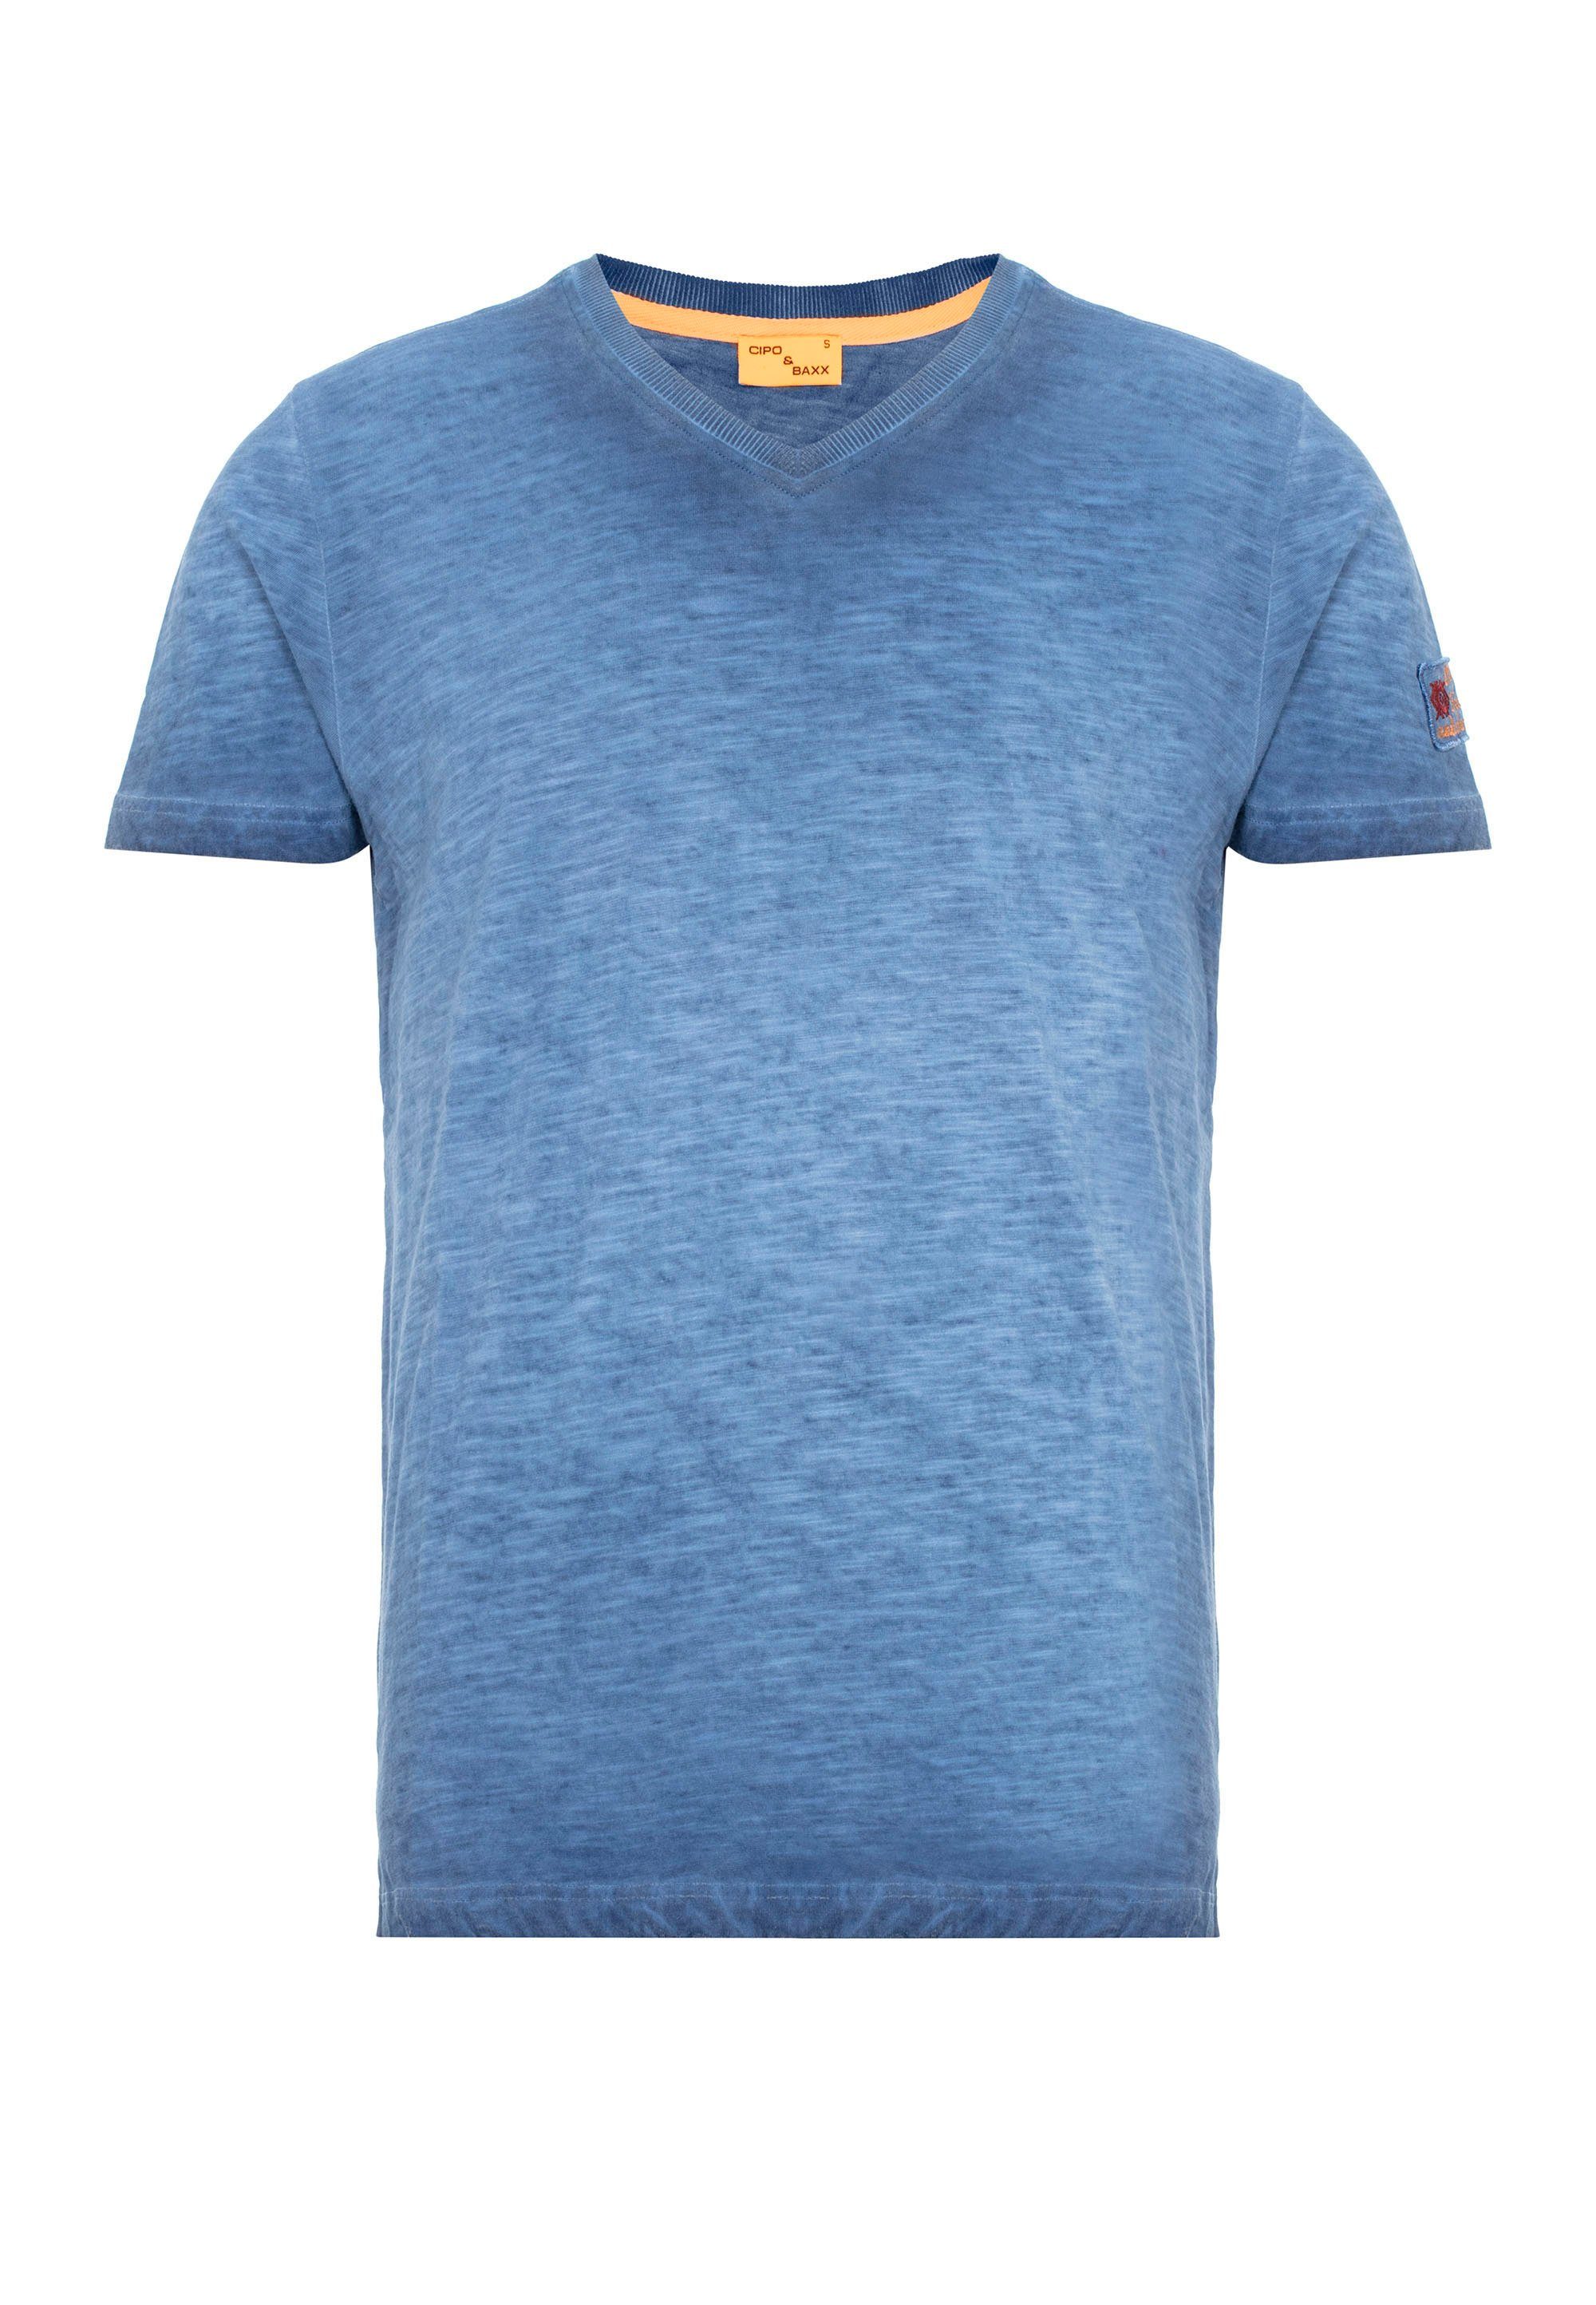 & Cipo T-Shirt kleinem Logo-Patch indigo mit Baxx